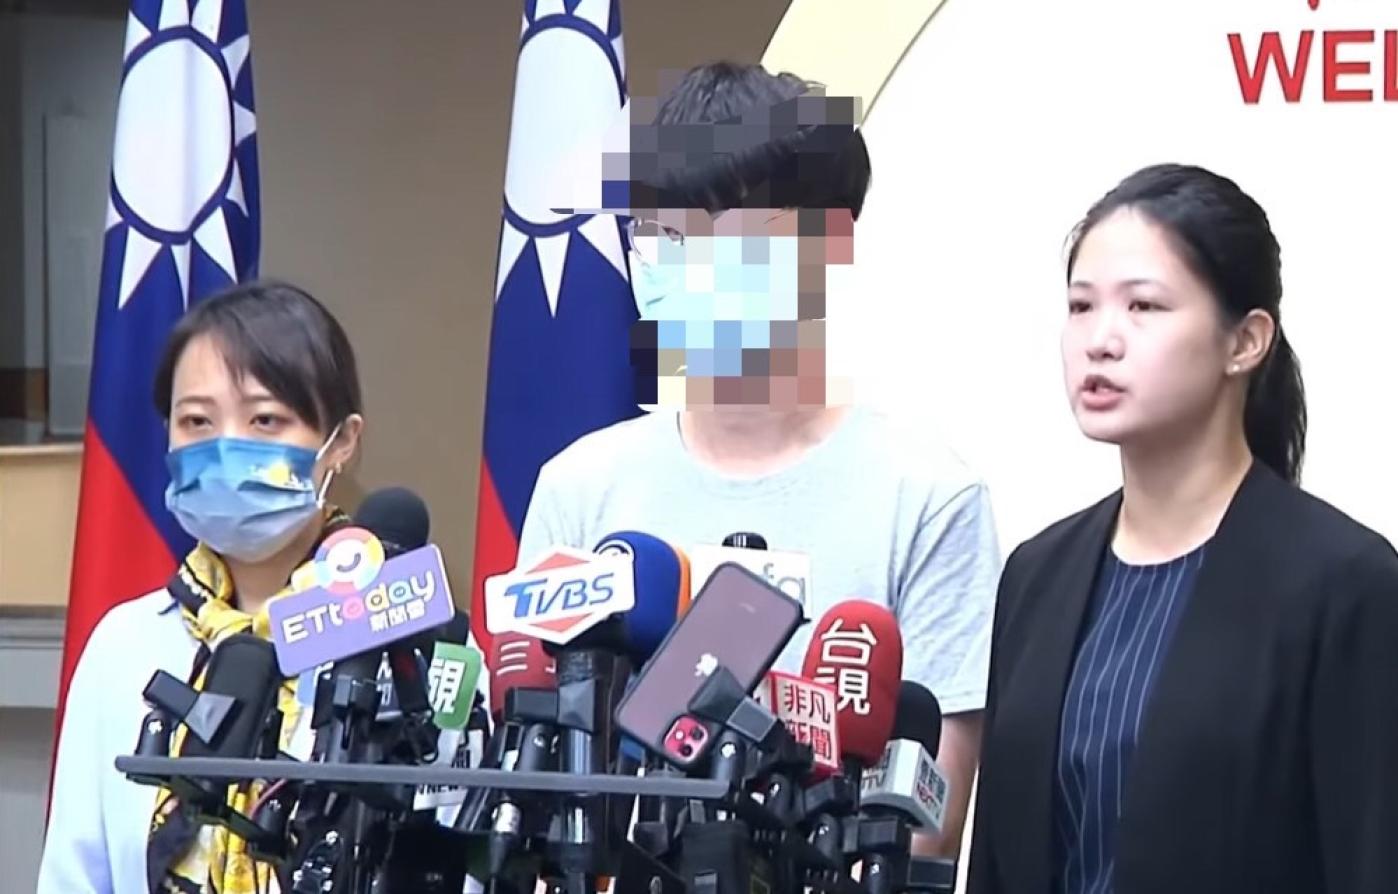 翻攝畫面受害者李先生今在台北市議員林亮君的陪同下舉行記者會，秀證據還原遭王丹性騷經過。翻攝畫面